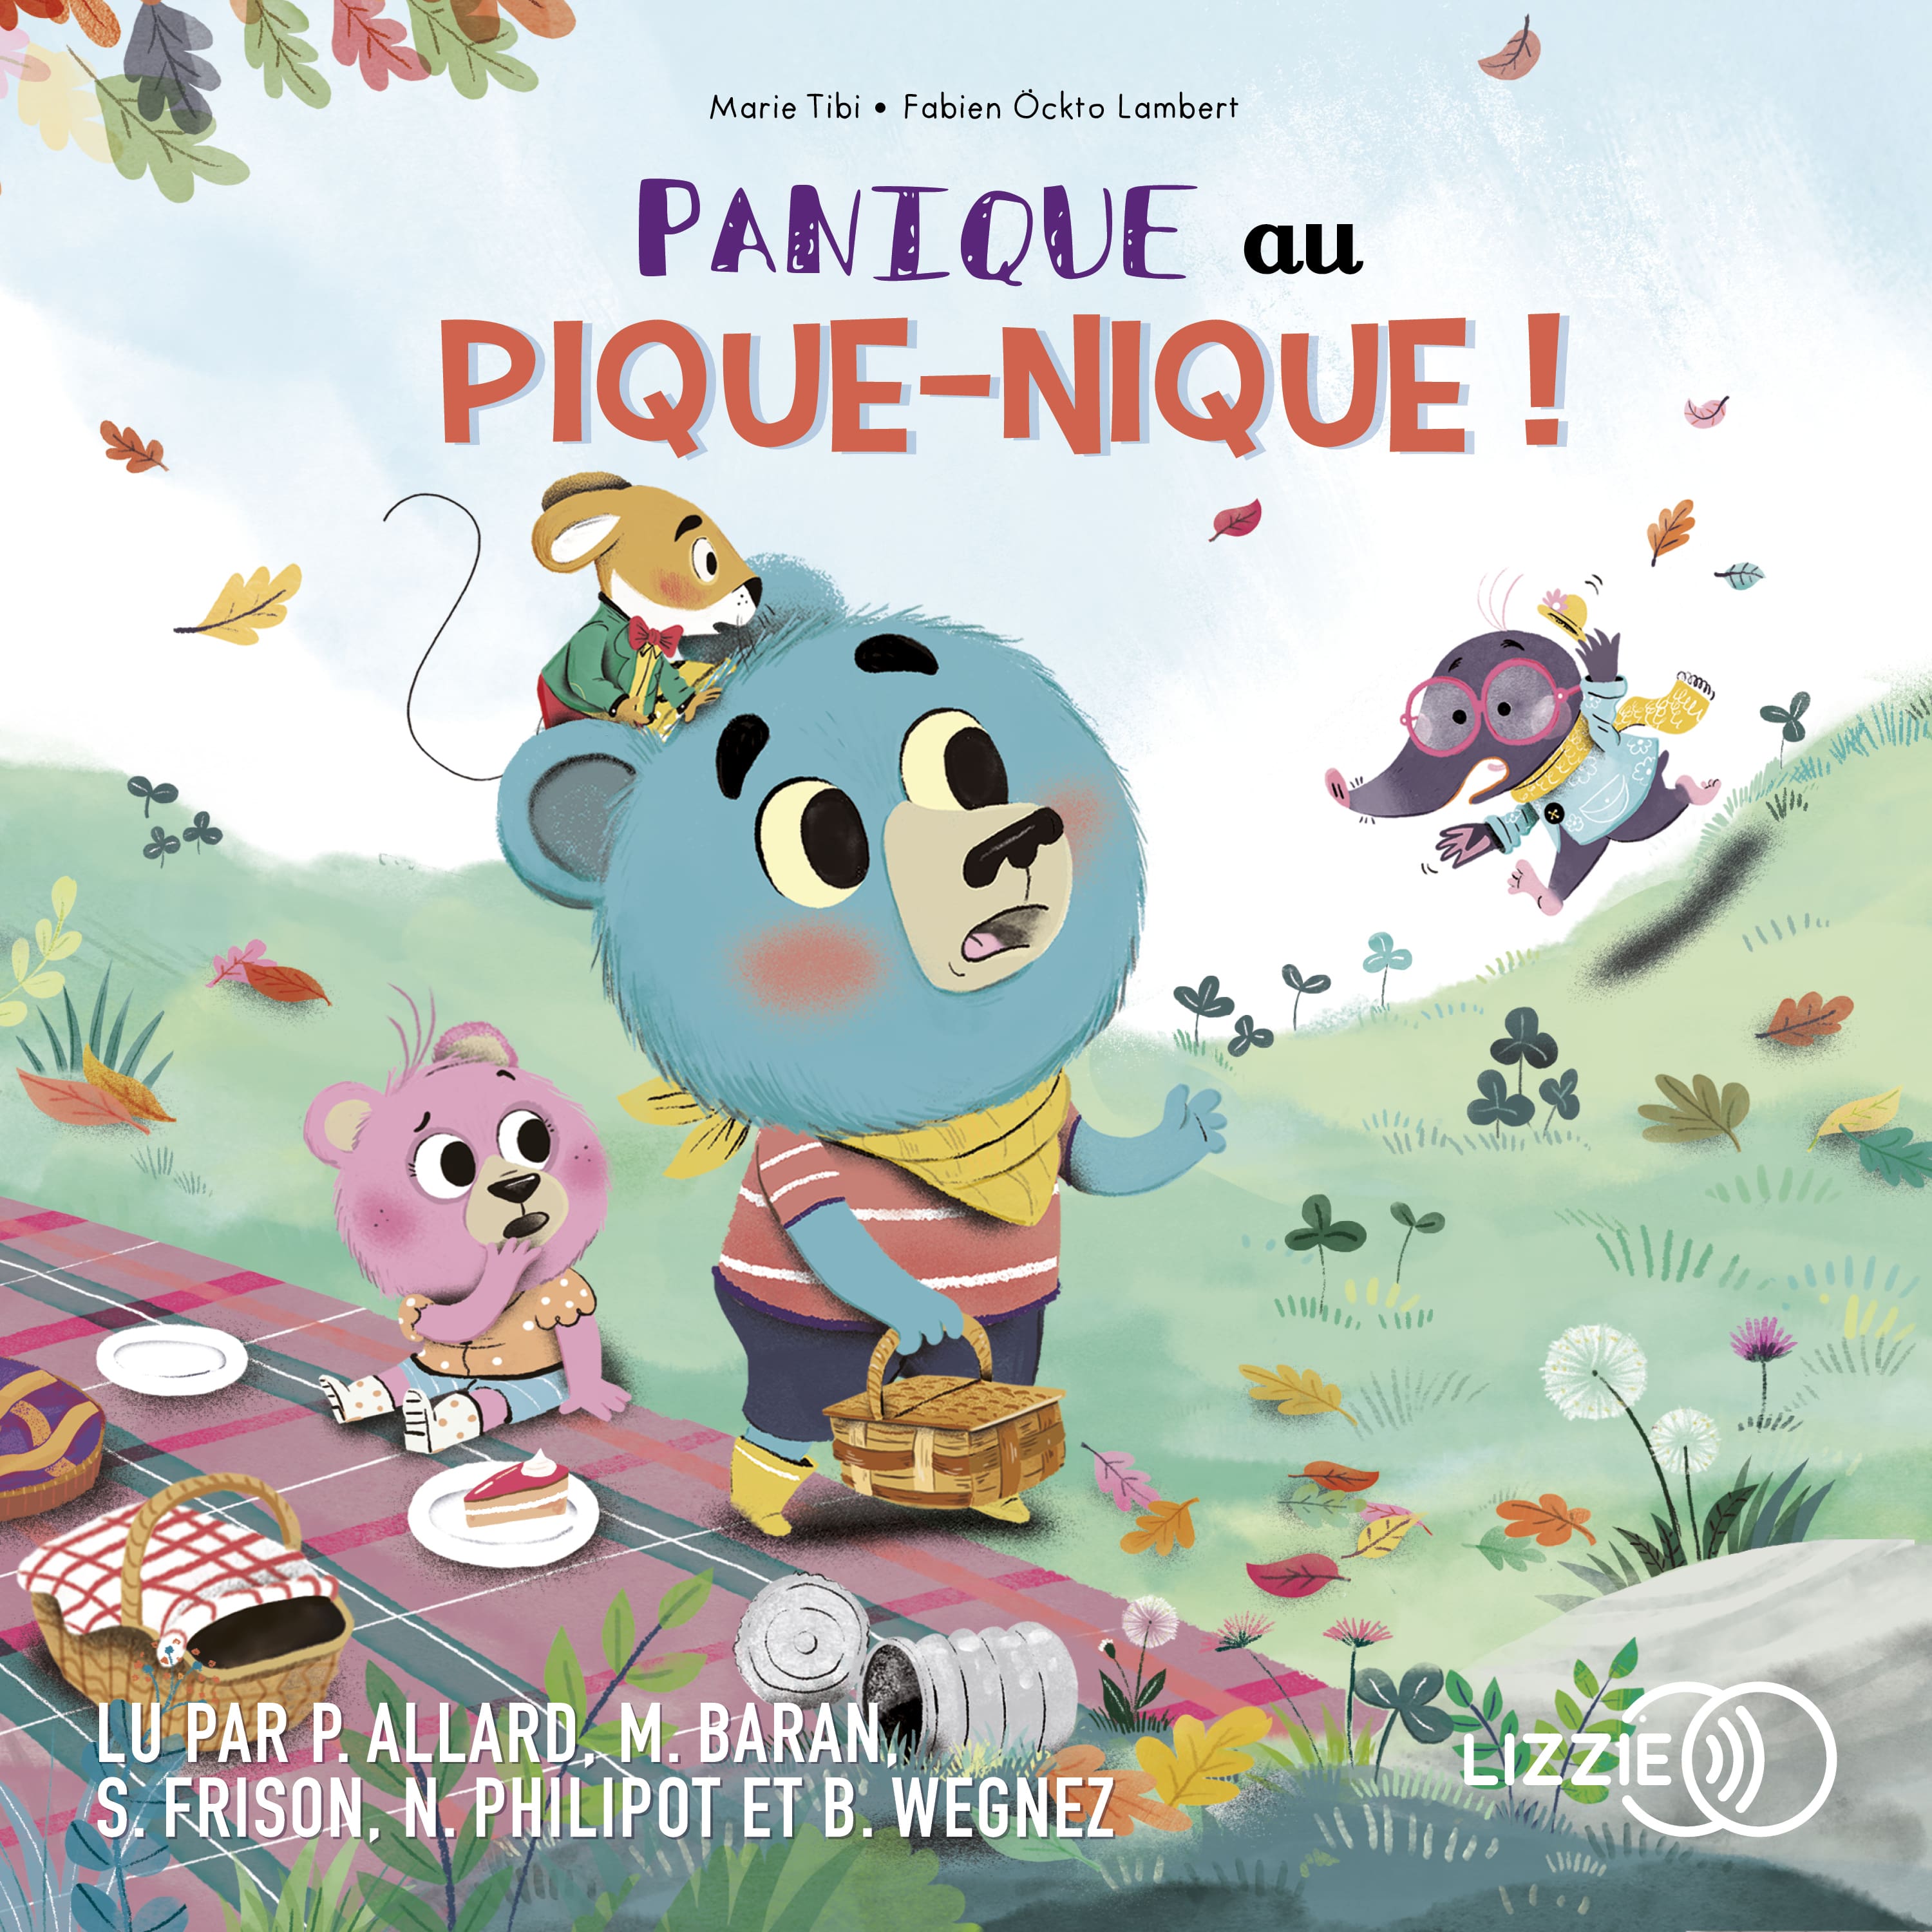 Couverture du livre audio Panique au pique-nique ! - Dans le bois de Coin joli De Fabien Öckto-Lambert  et Marie Tibi 